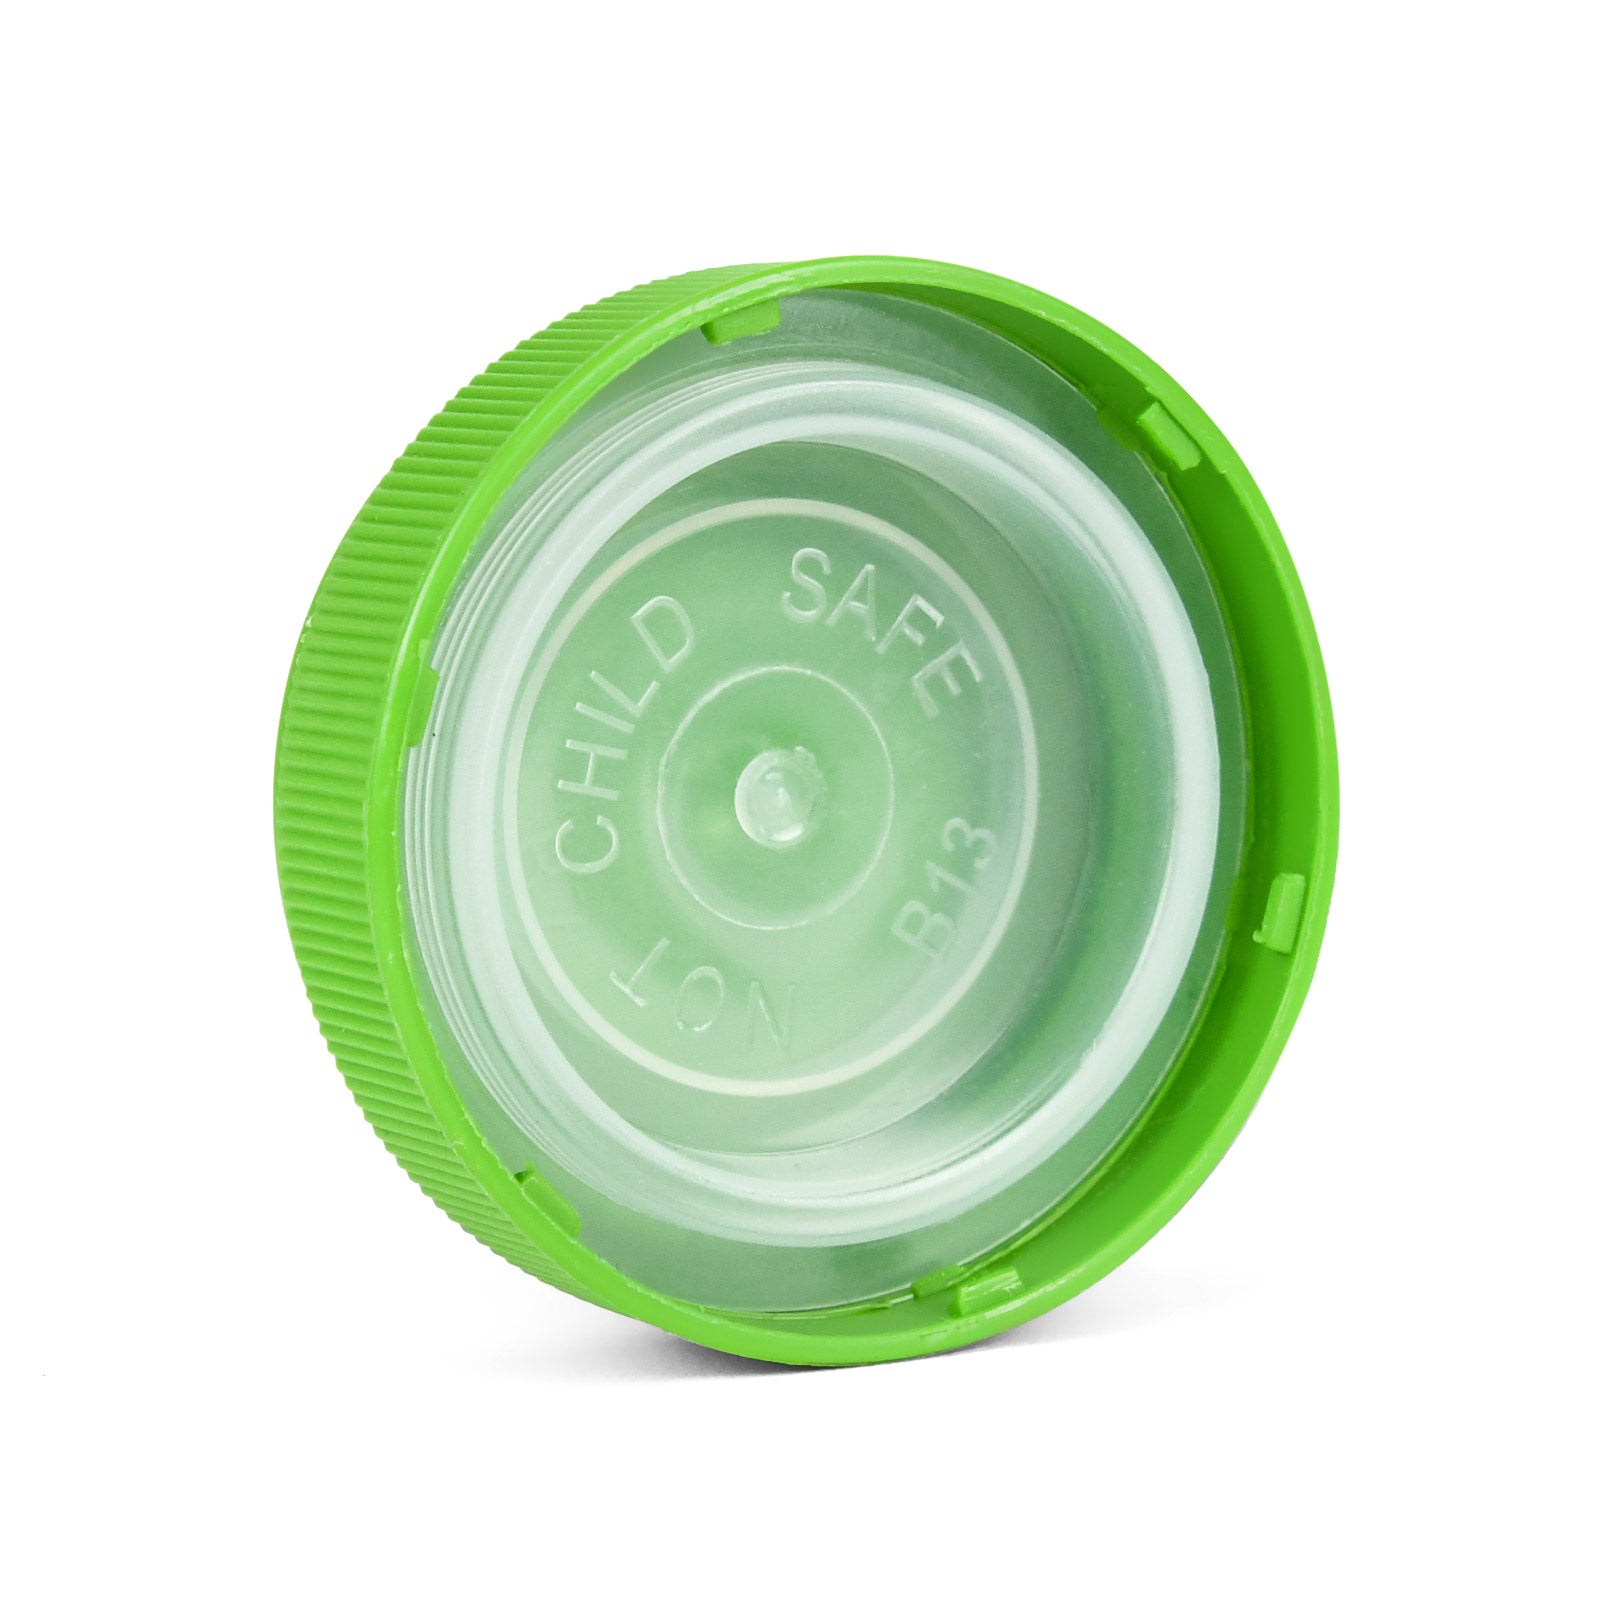 40 Dram Reversible Cap Opaque Green - 1 Count